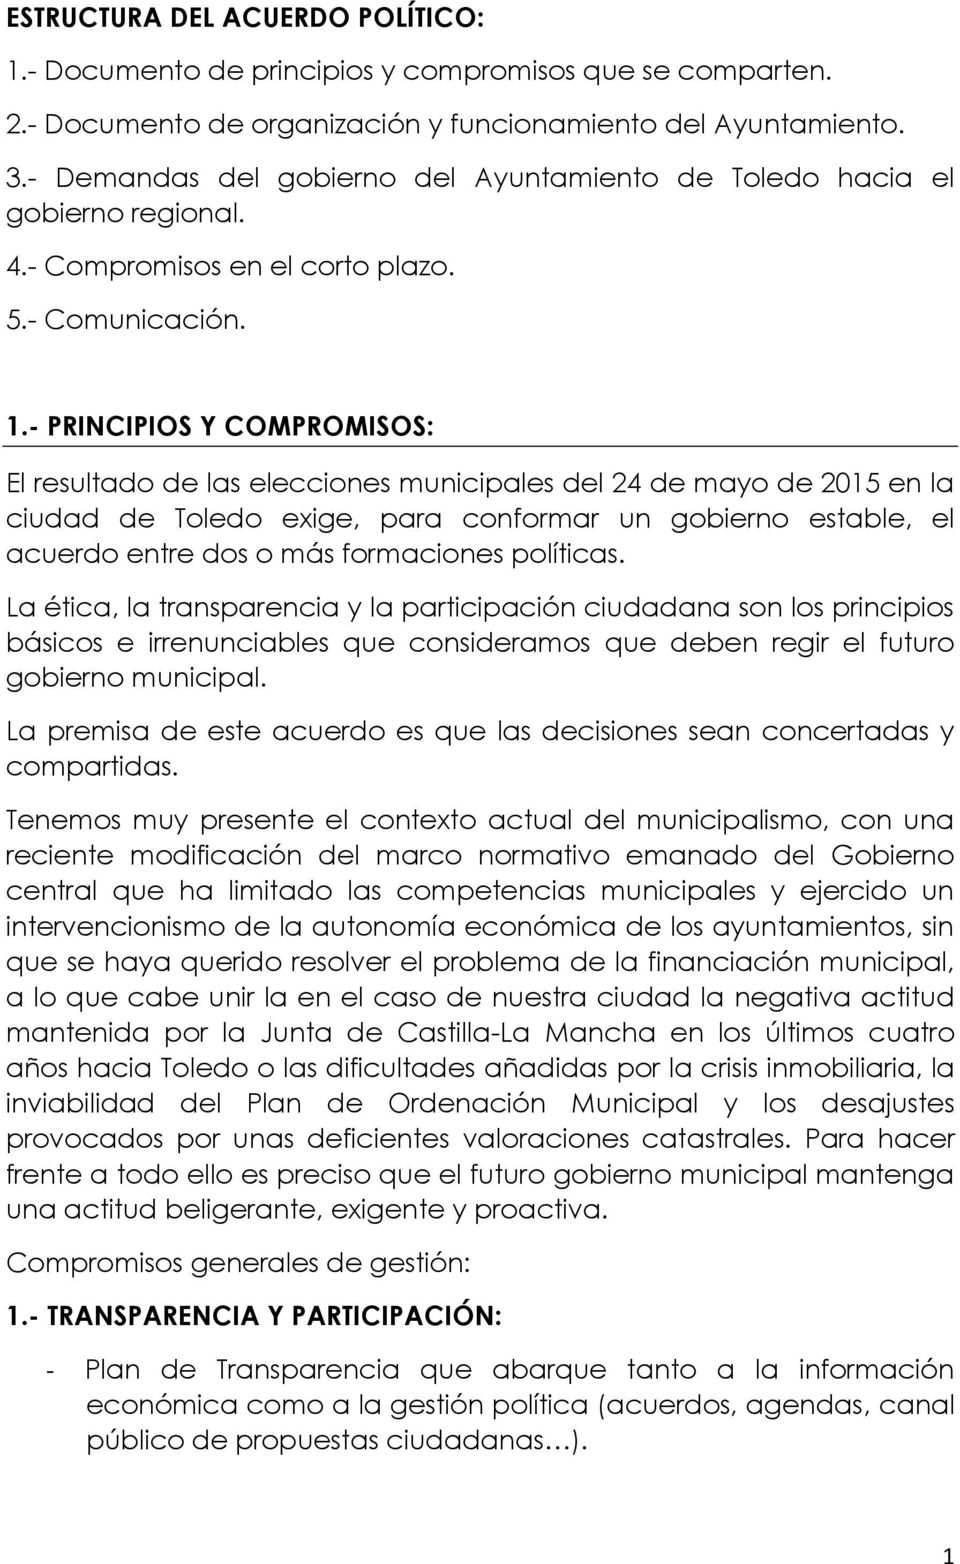 - PRINCIPIOS Y COMPROMISOS: El resultado de las elecciones municipales del 24 de mayo de 2015 en la ciudad de Toledo exige, para conformar un gobierno estable, el acuerdo entre dos o más formaciones